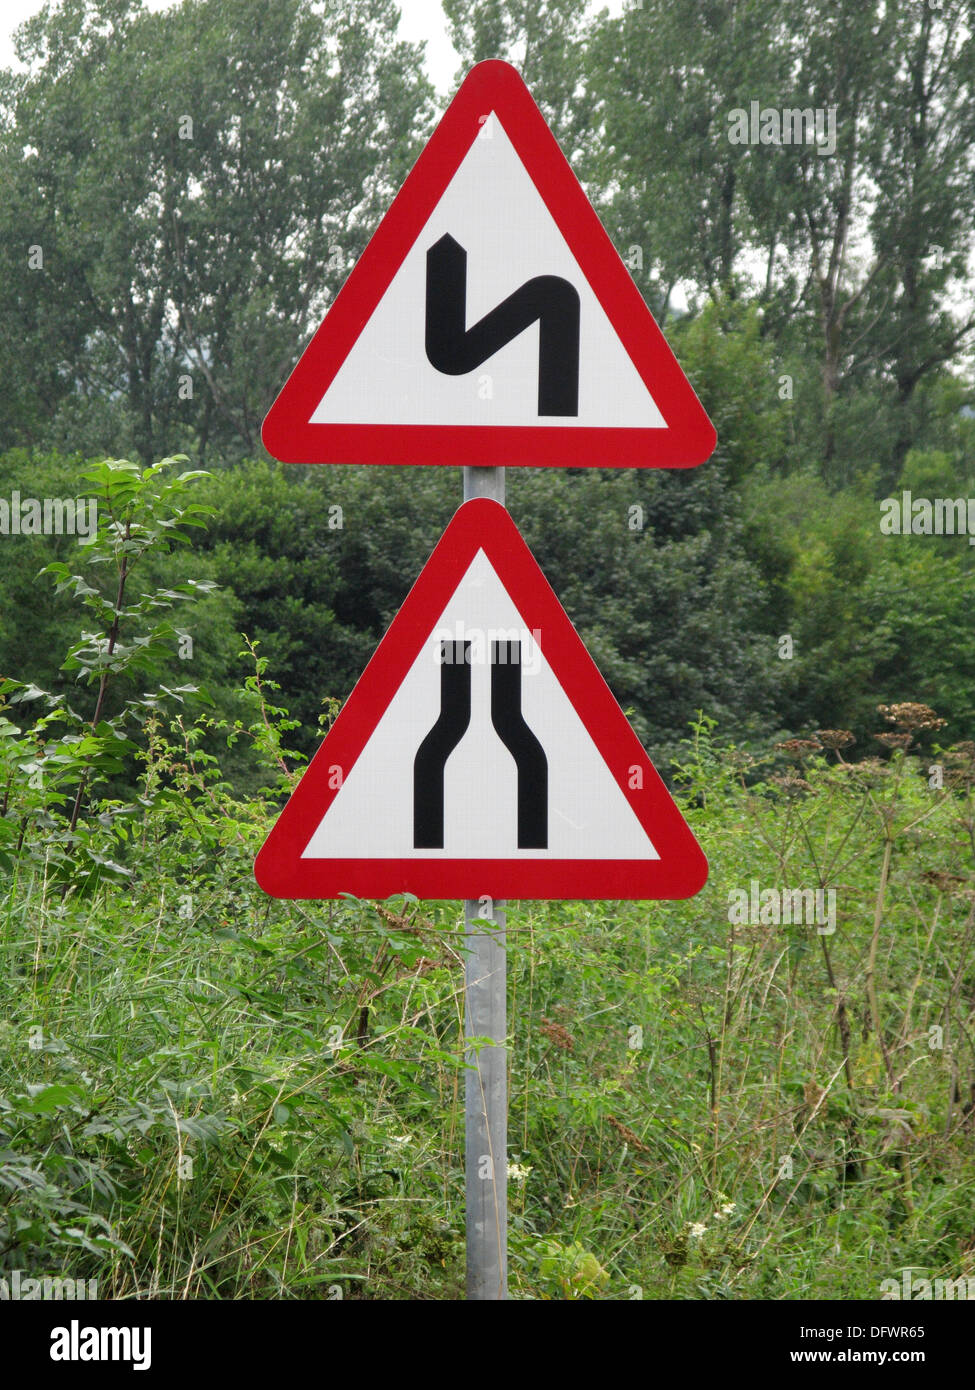 Le triangle rouge de signalisation d'avertissement et de mise en route pour un rétrécissement et Bendy Road, UK Banque D'Images